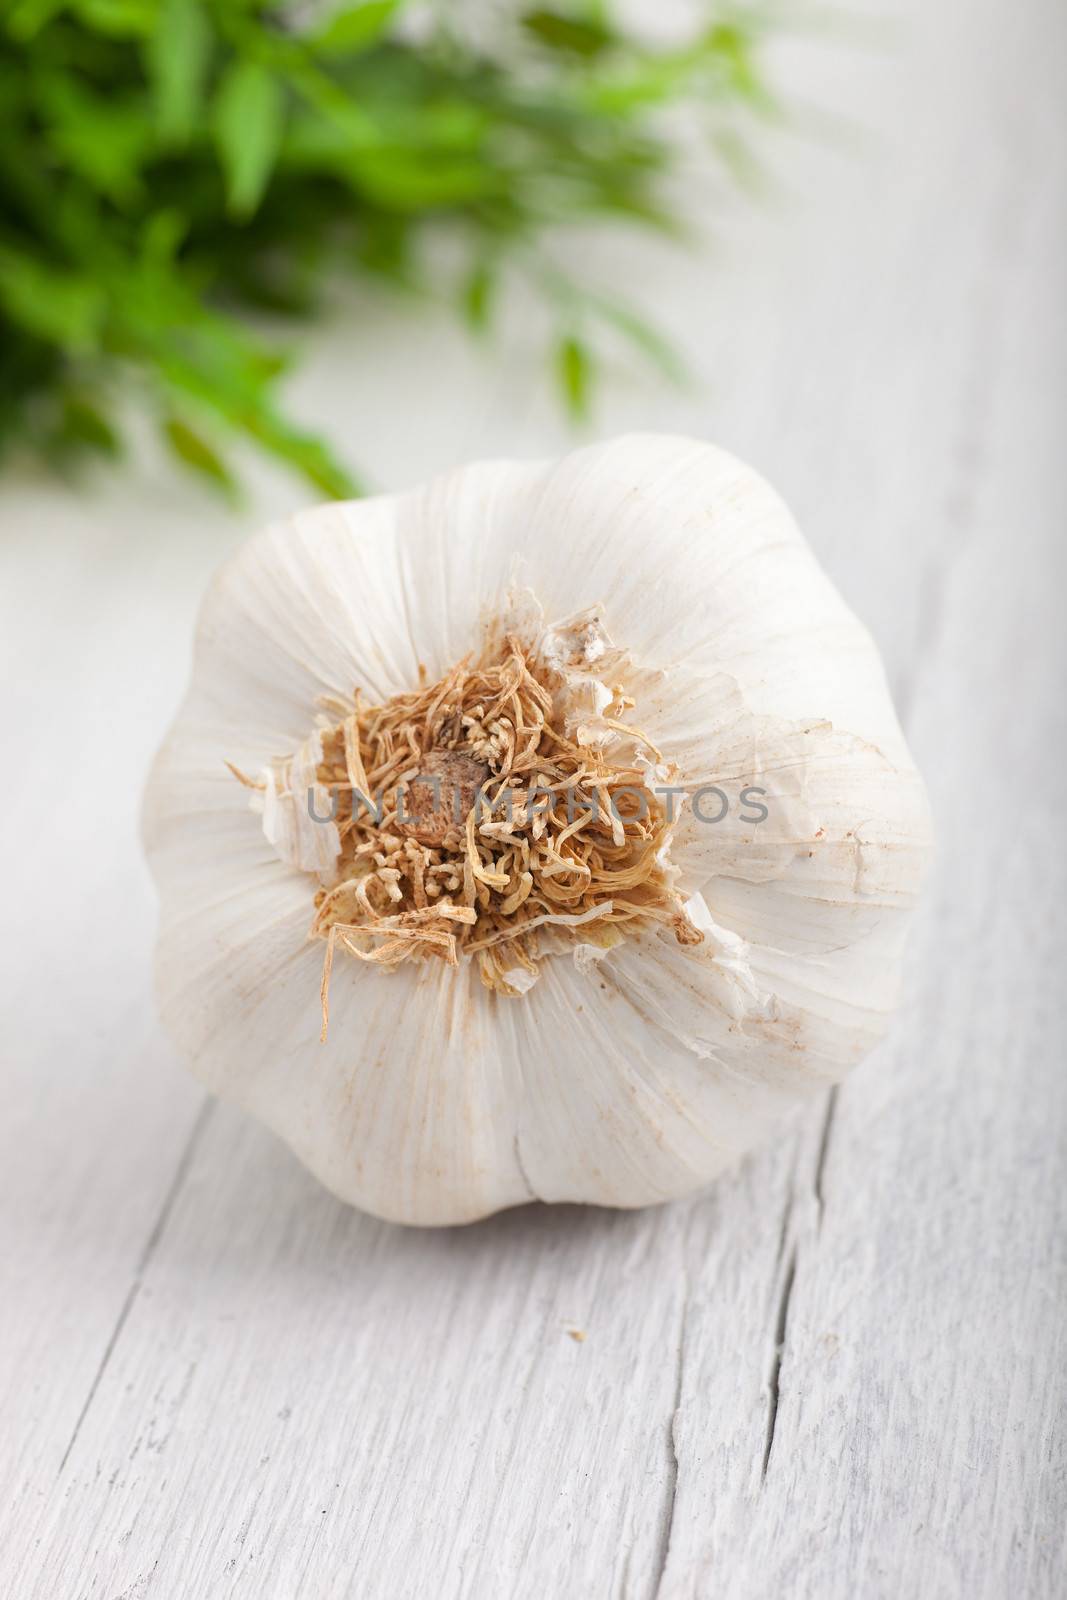 Fresh whole garlic bulb by Farina6000